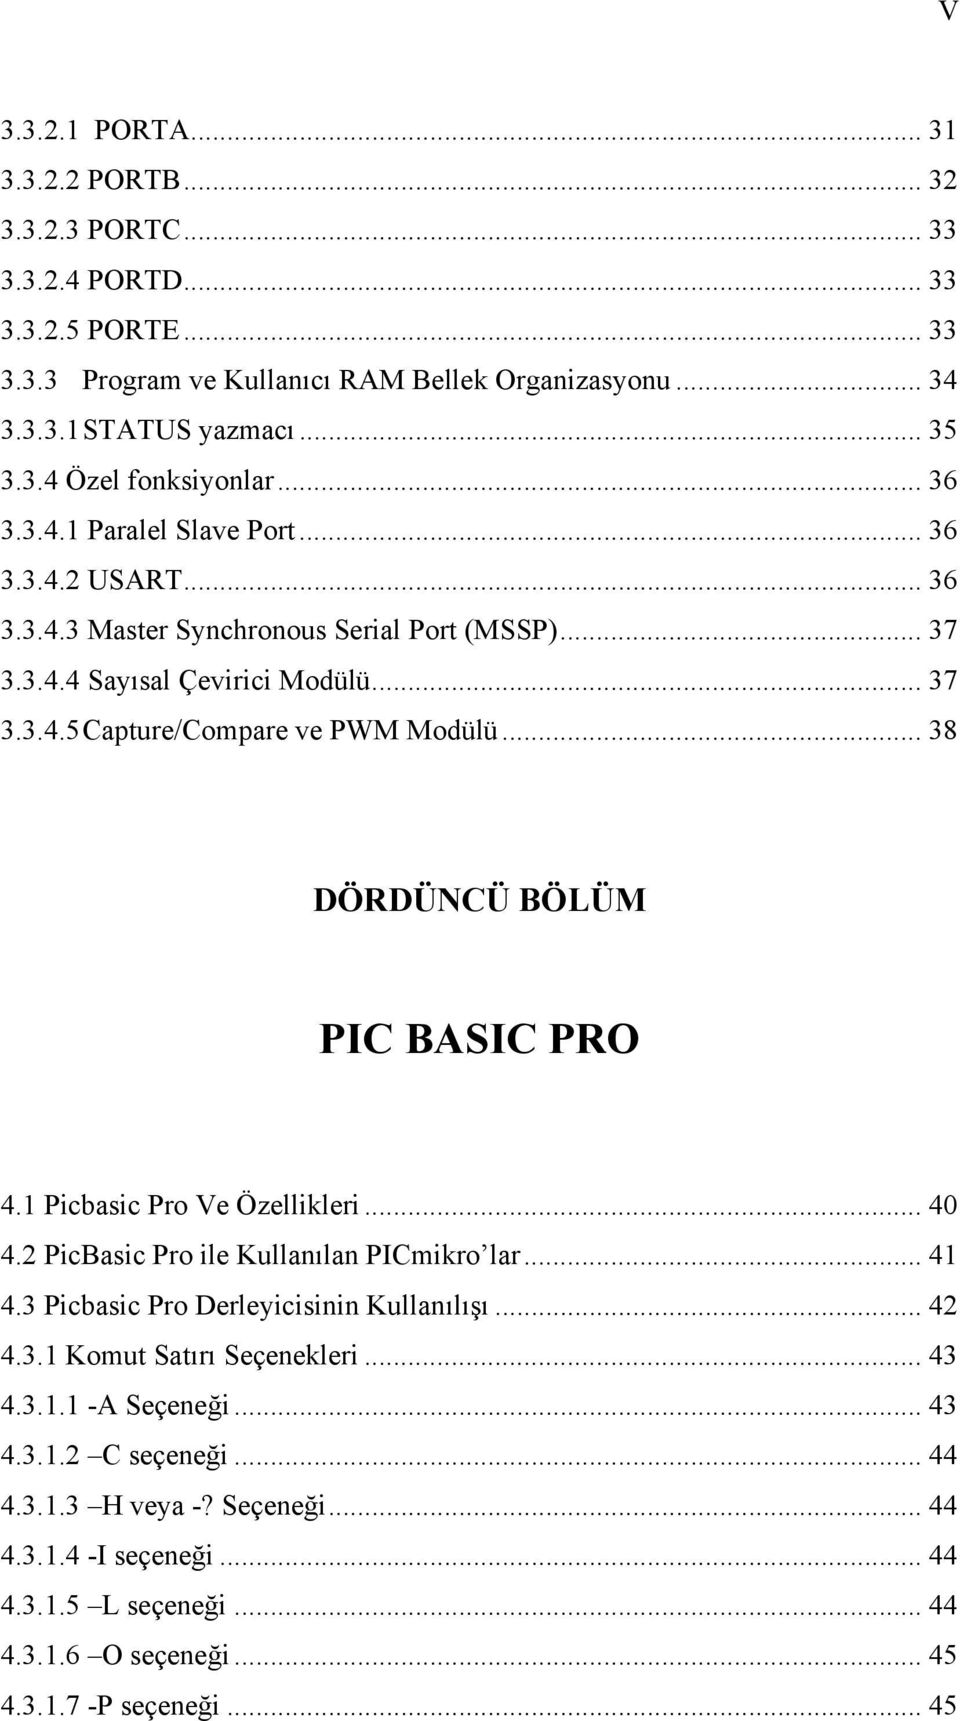 .. 38 DÖRDÜNCÜ BÖLÜM PIC BASIC PRO 4.1 Picbasic Pro Ve Özellikleri... 40 4.2 PicBasic Pro ile Kullanılan PICmikro lar... 41 4.3 Picbasic Pro Derleyicisinin Kullanılışı... 42 4.3.1 Komut Satırı Seçenekleri.